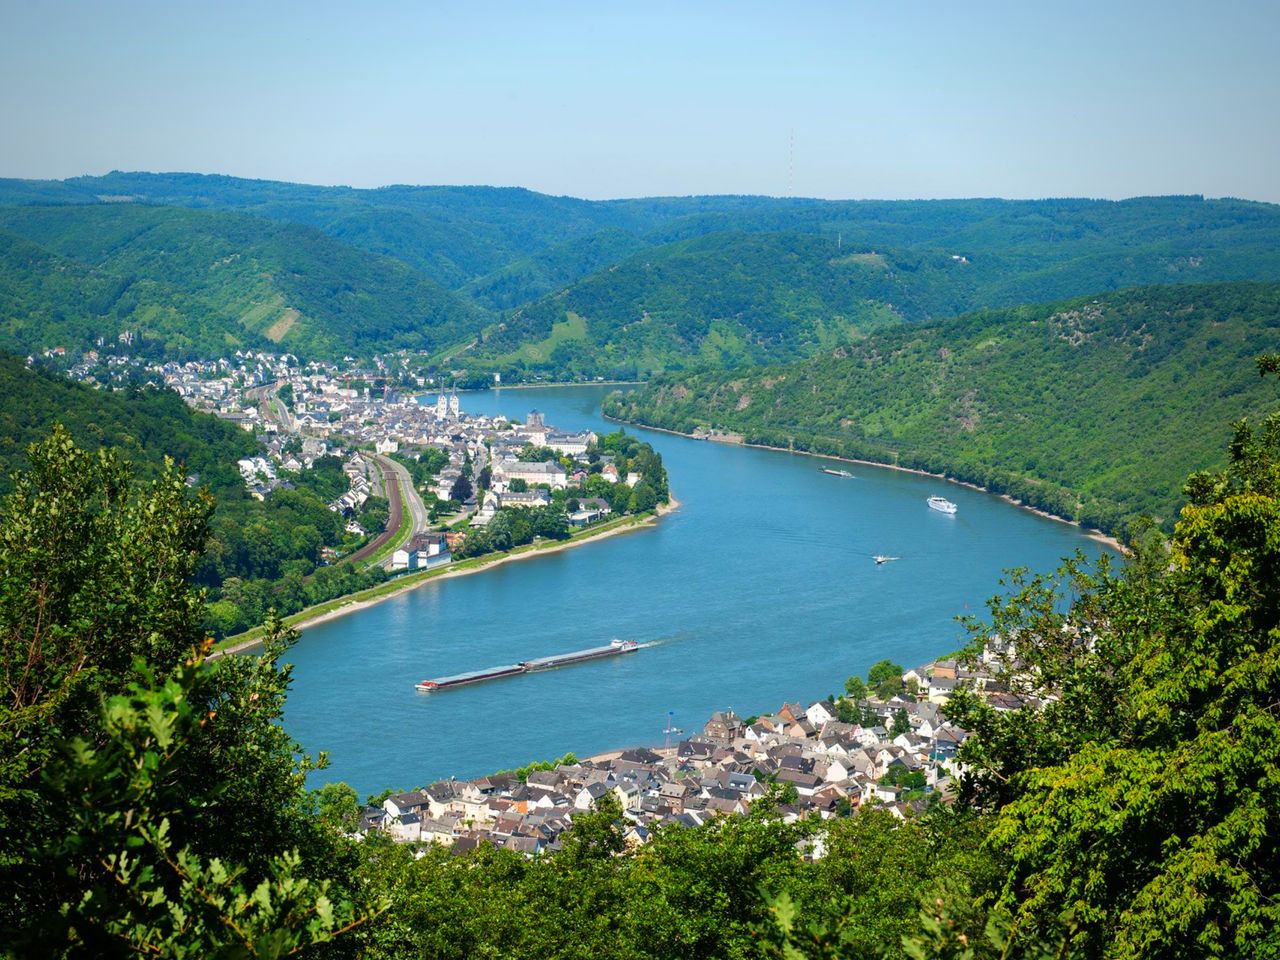 Radtour am Rhein